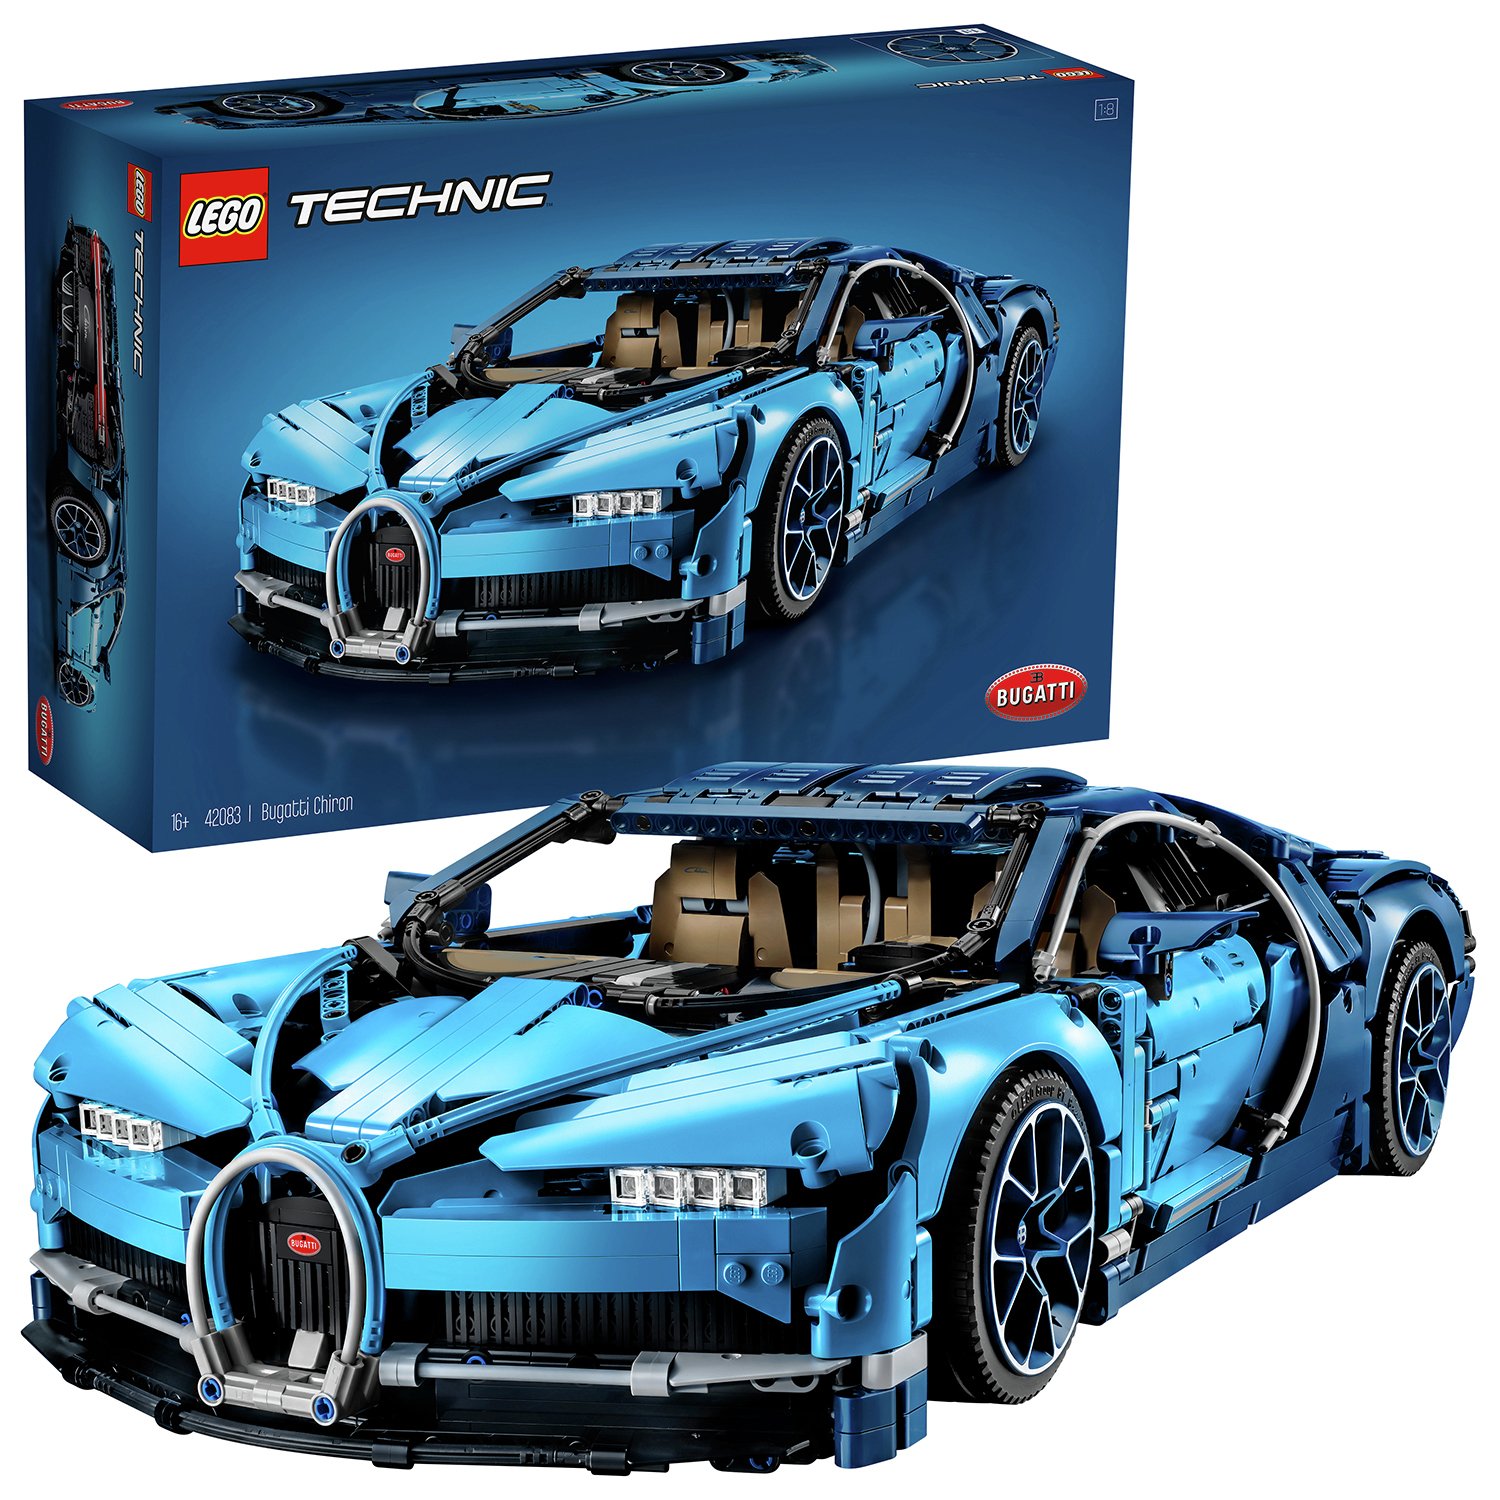 LEGO Technic Bugatti Chiron Collector Model Car Review